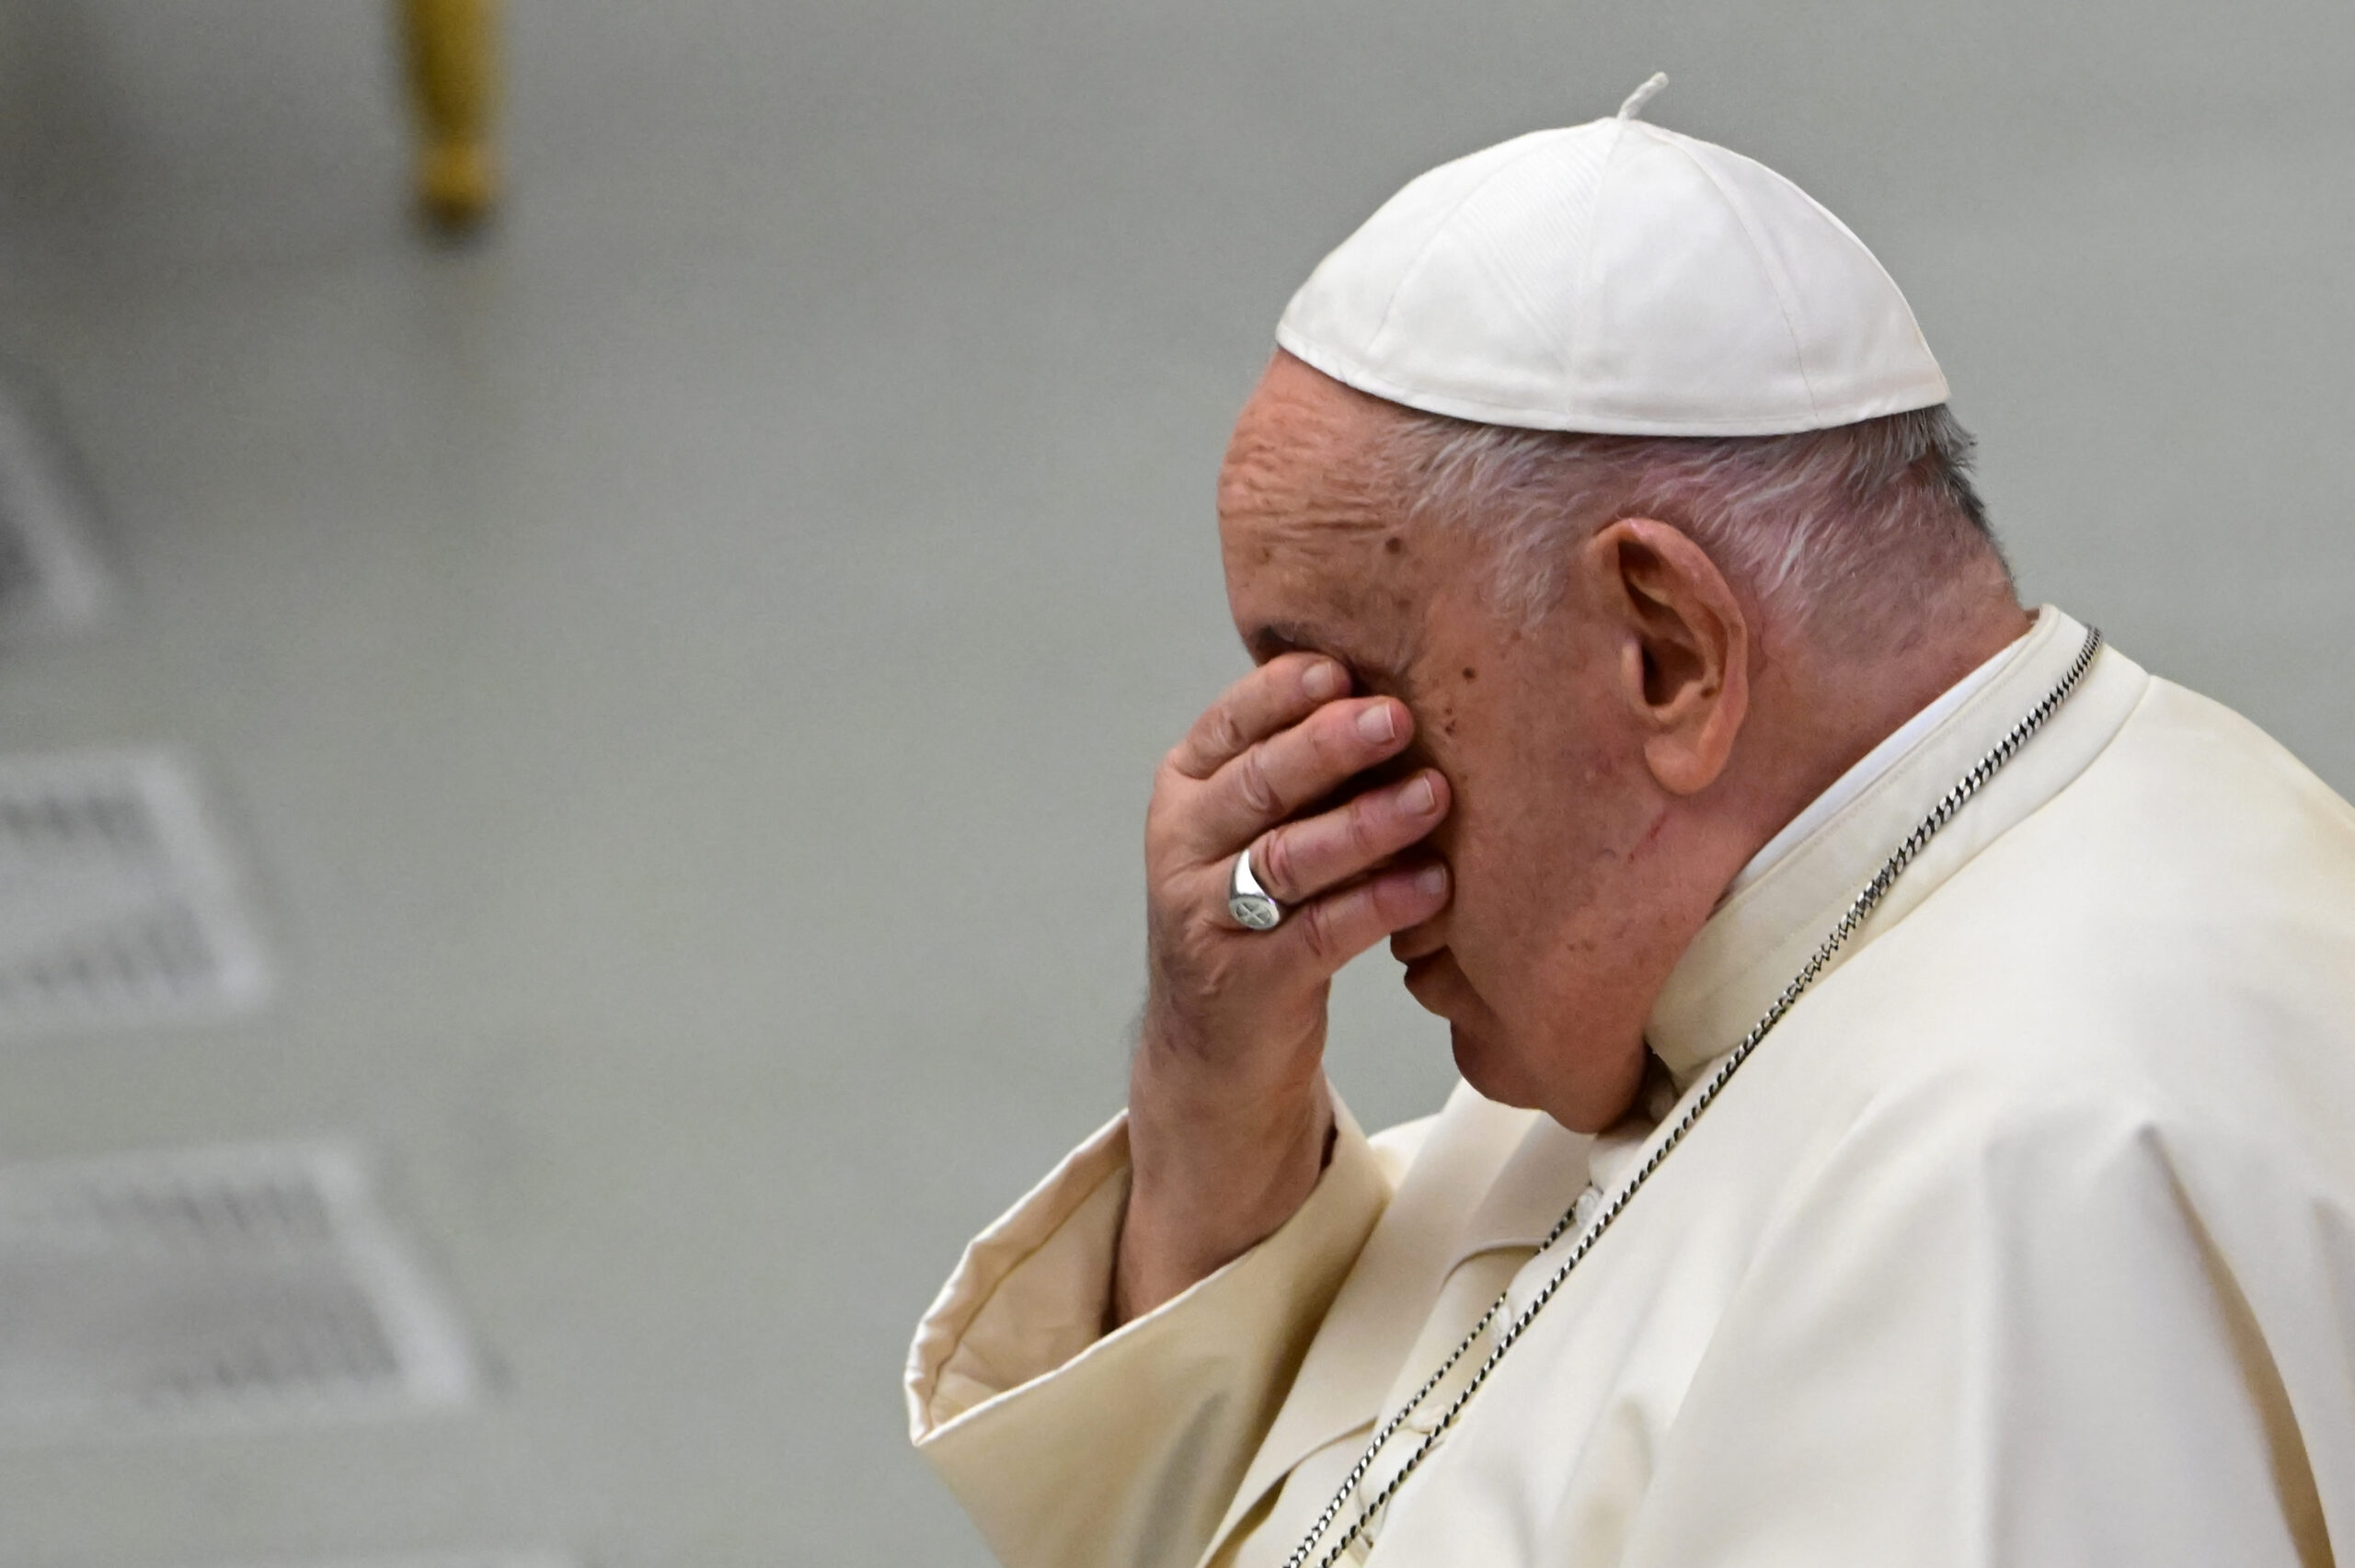 Pope Francis, nalungkot sa pagtatapos ng ceasefire